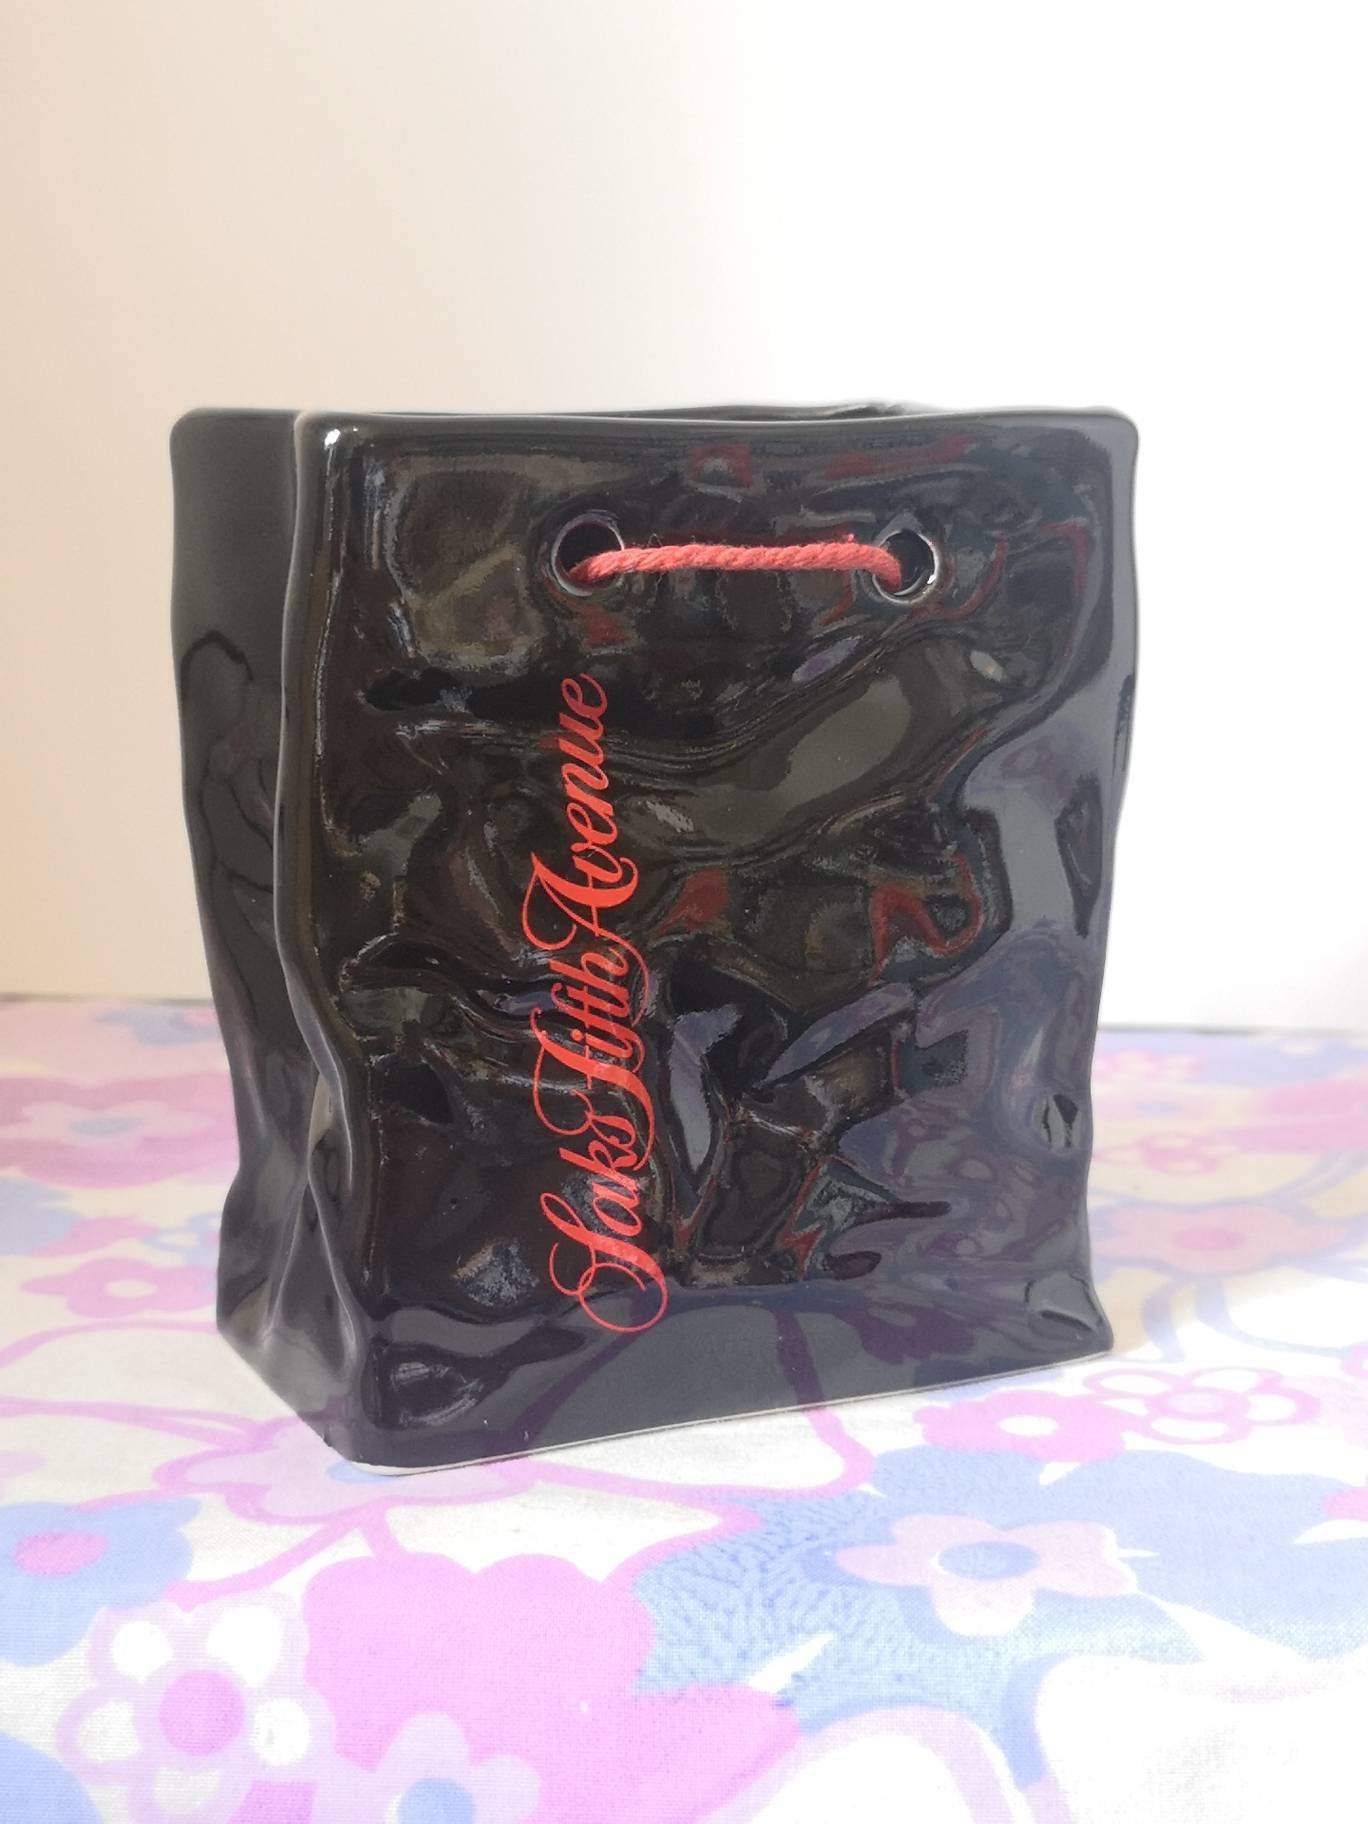 Saks Fifth Avenue Ceramic Black Bag Vase. Vintage Promotional 